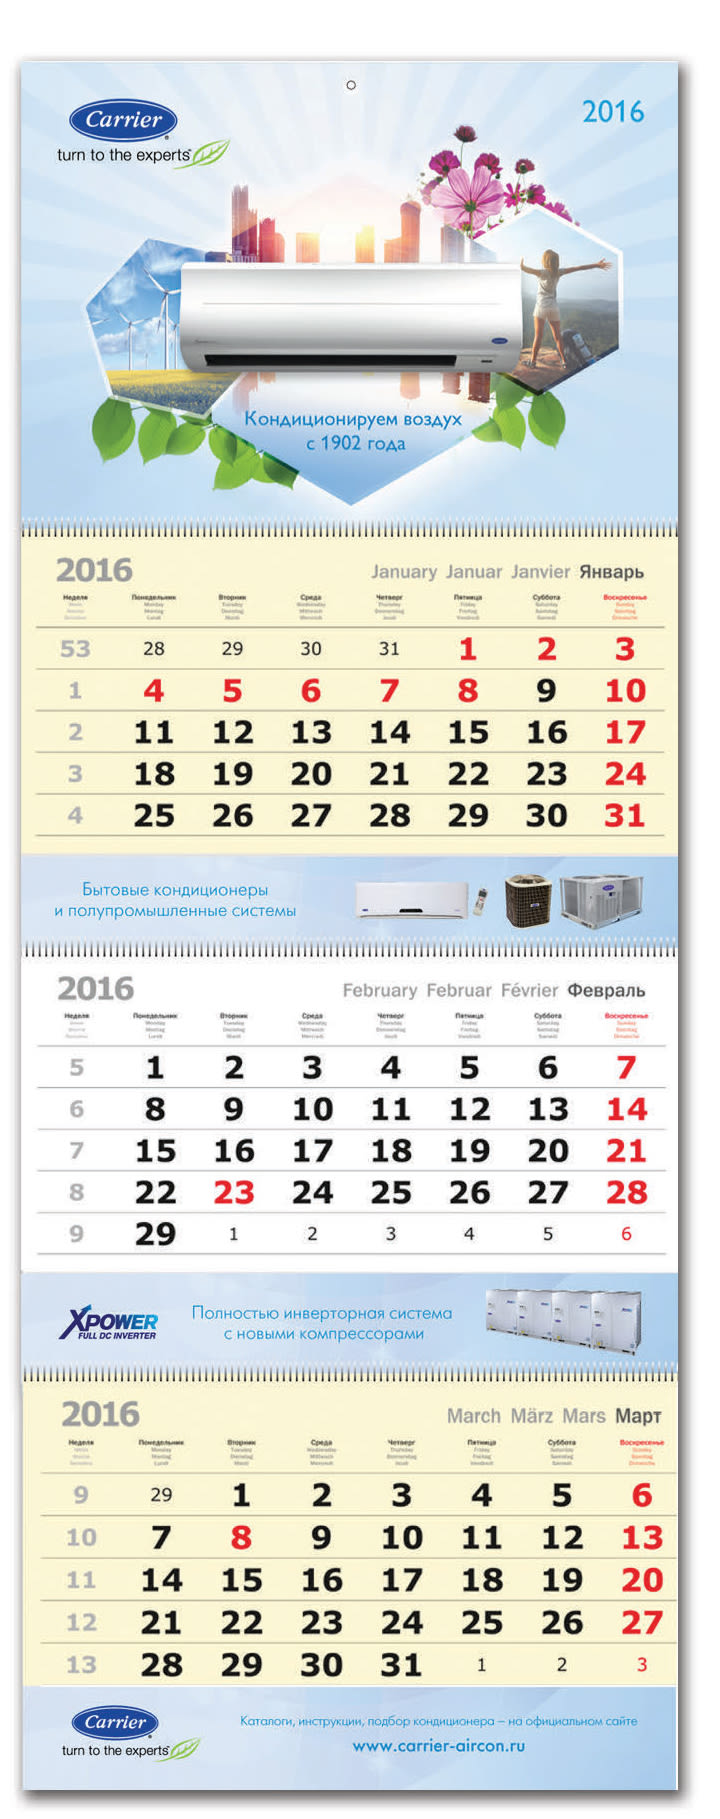 Calendarios para Carrier 0